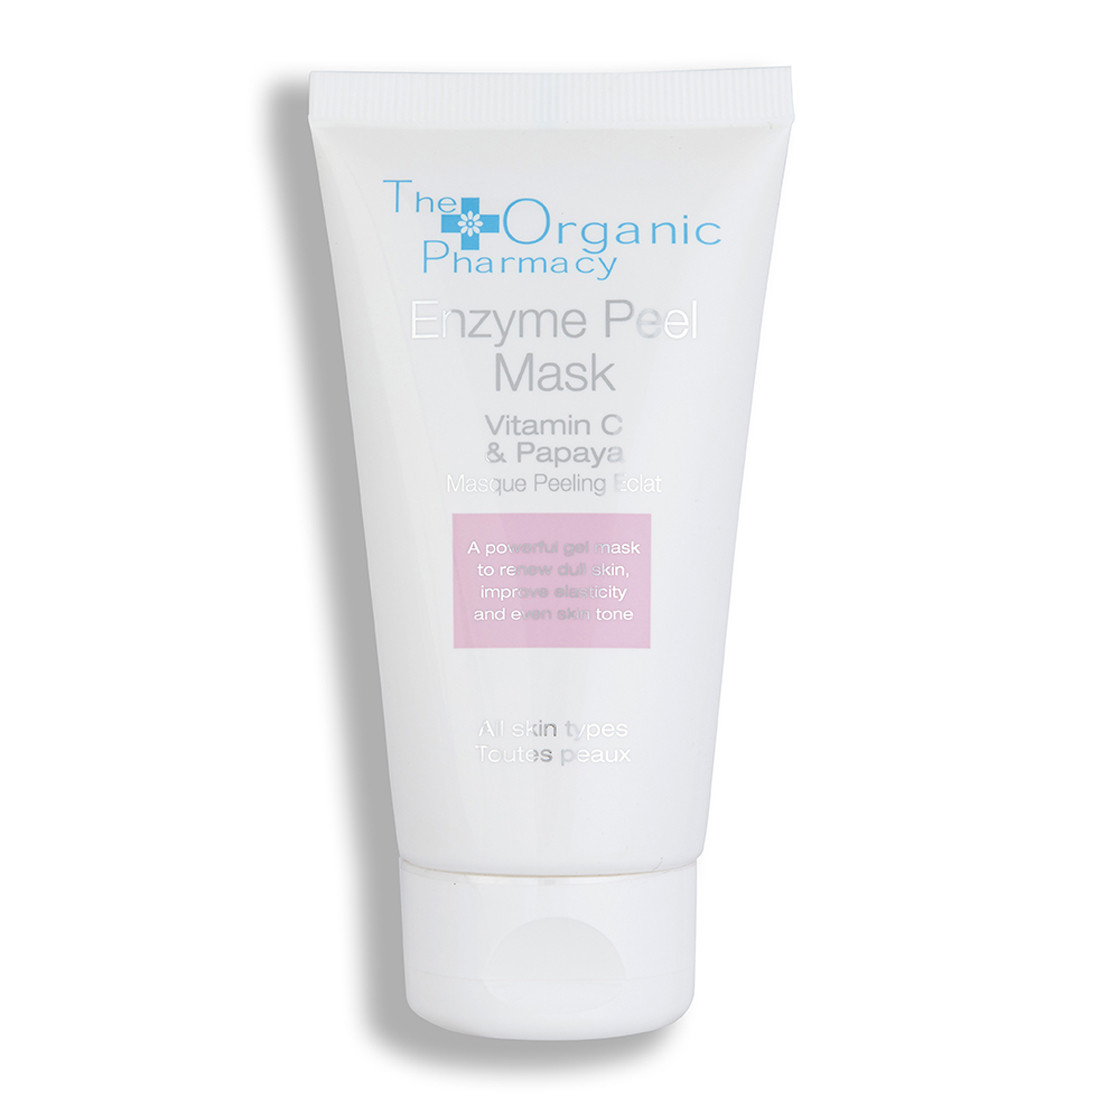 Відгуки про The Organic Pharmacy Enzyme Peel Mask with Vitamin C and Papaya Энзимная пилинг-маска